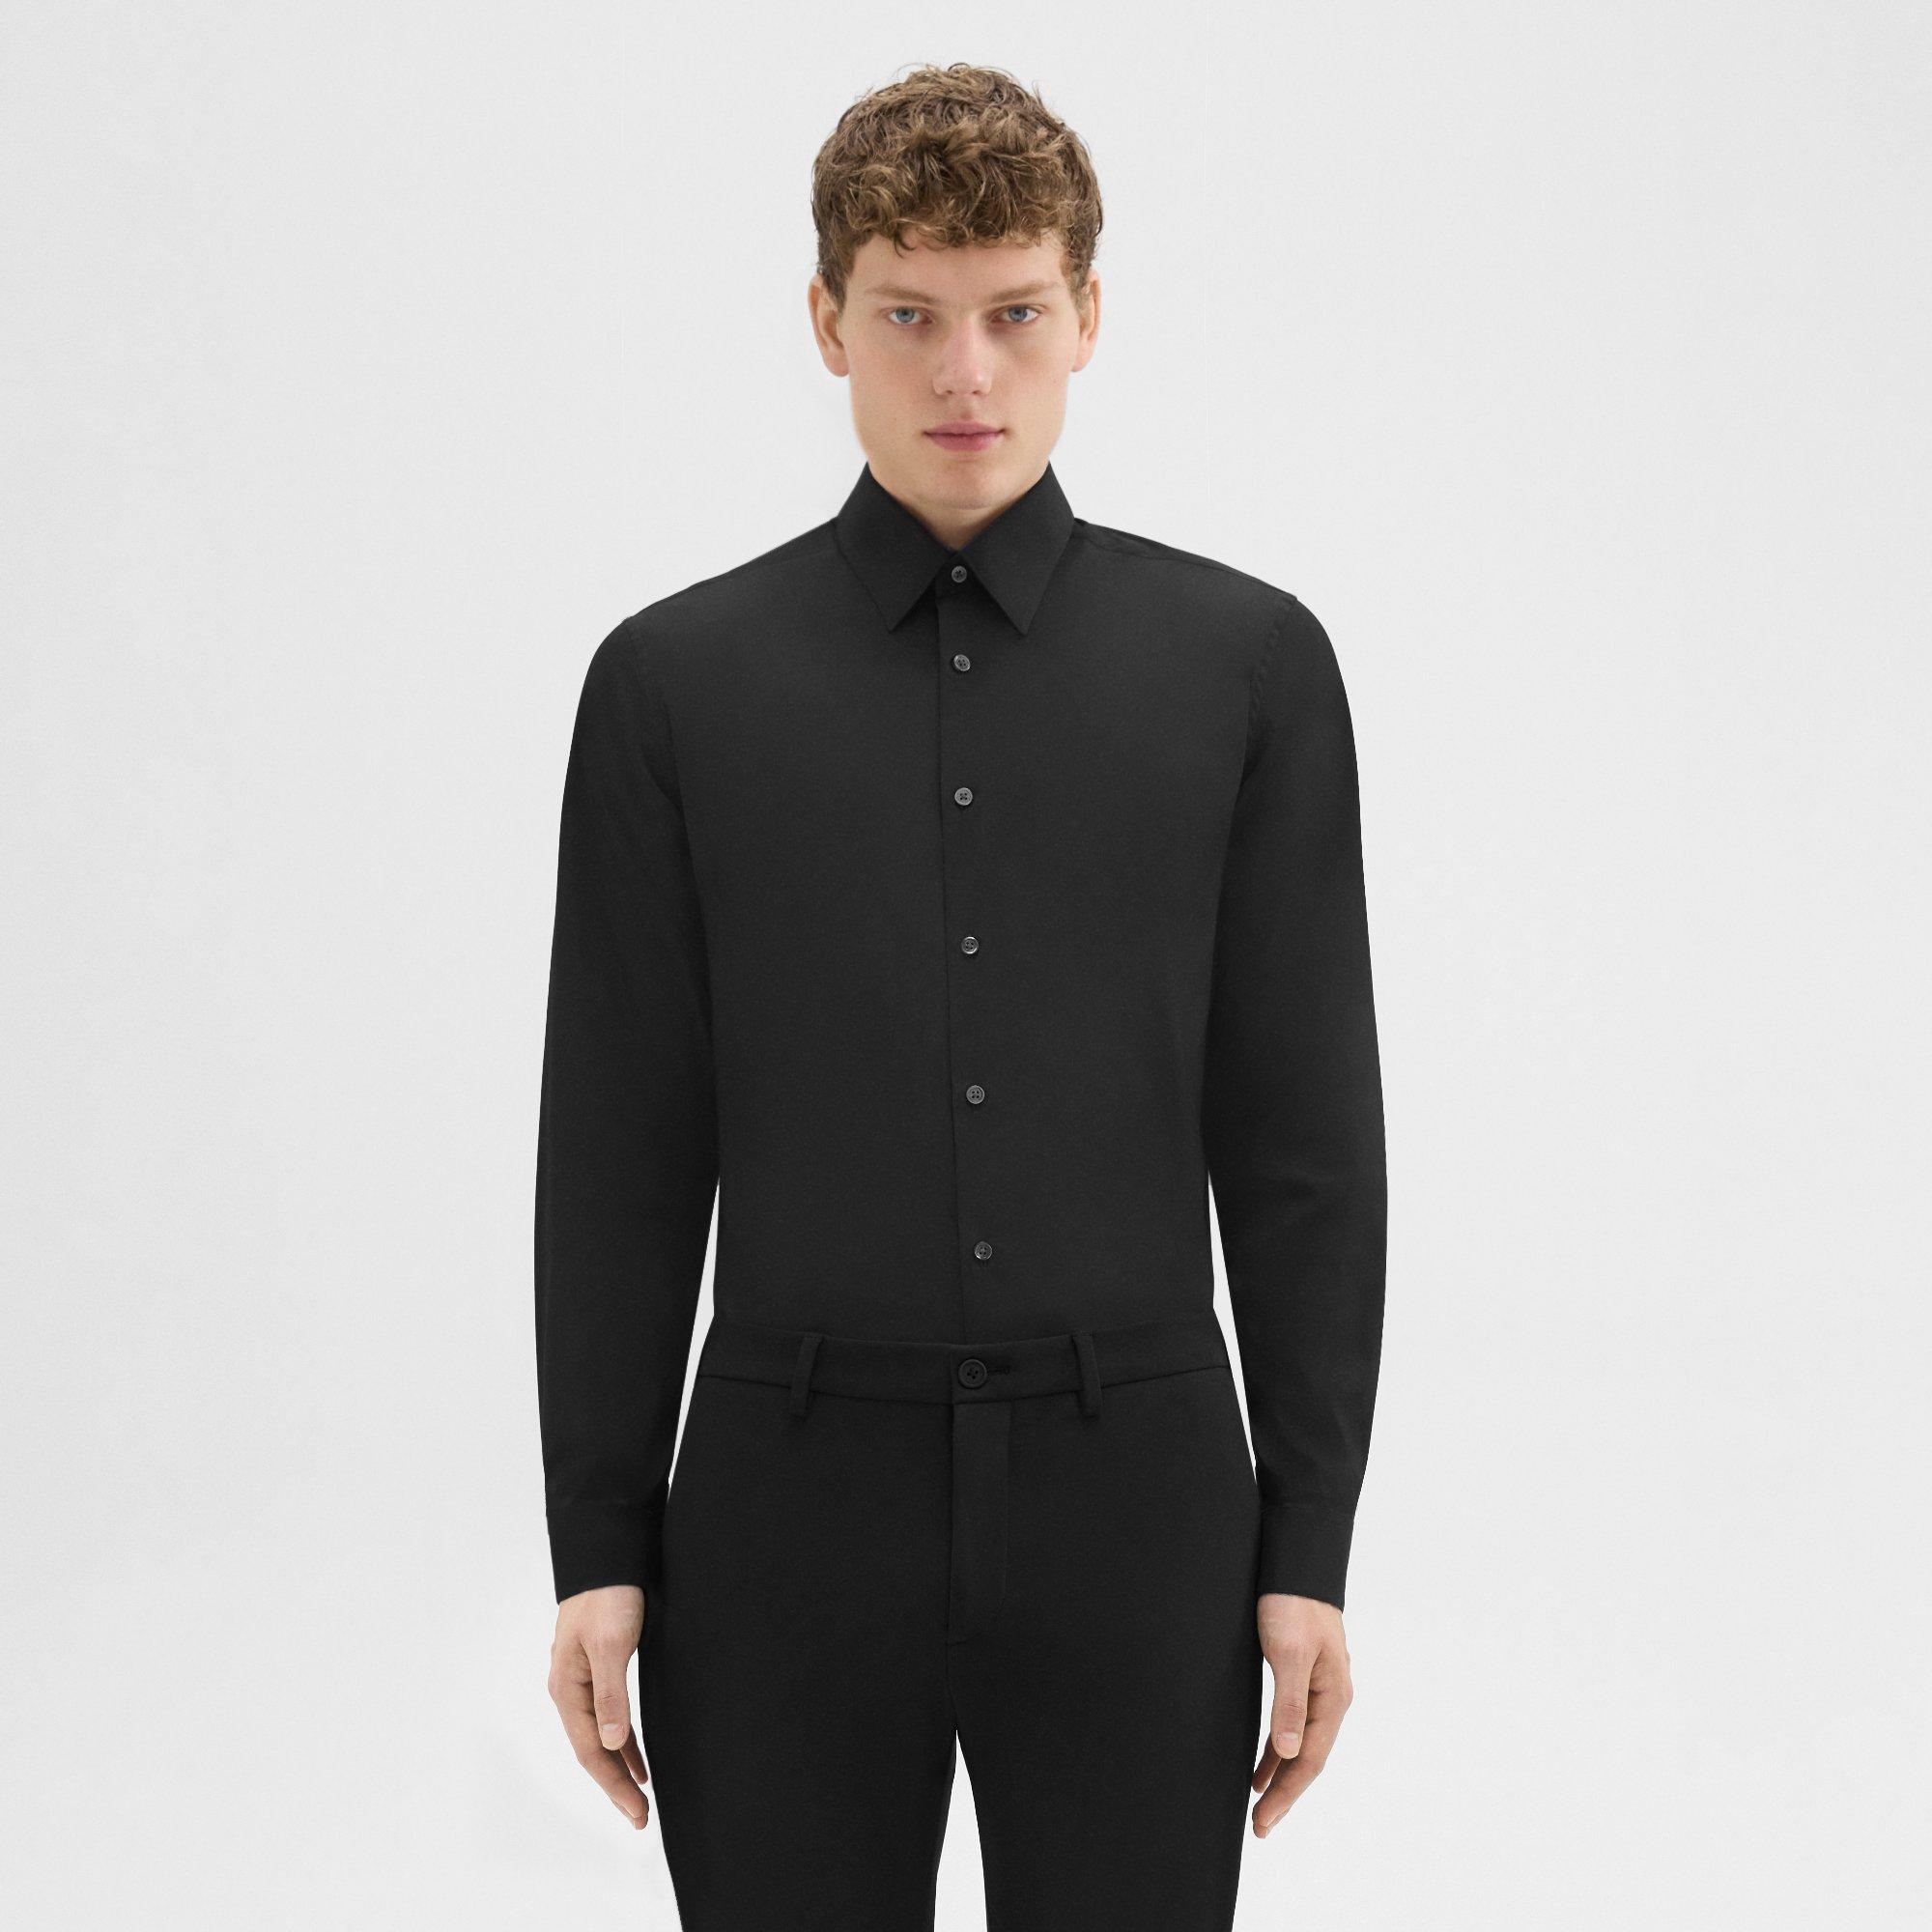 띠어리 셔츠 Theory Sylvain Shirt in Good Cotton,BLACK